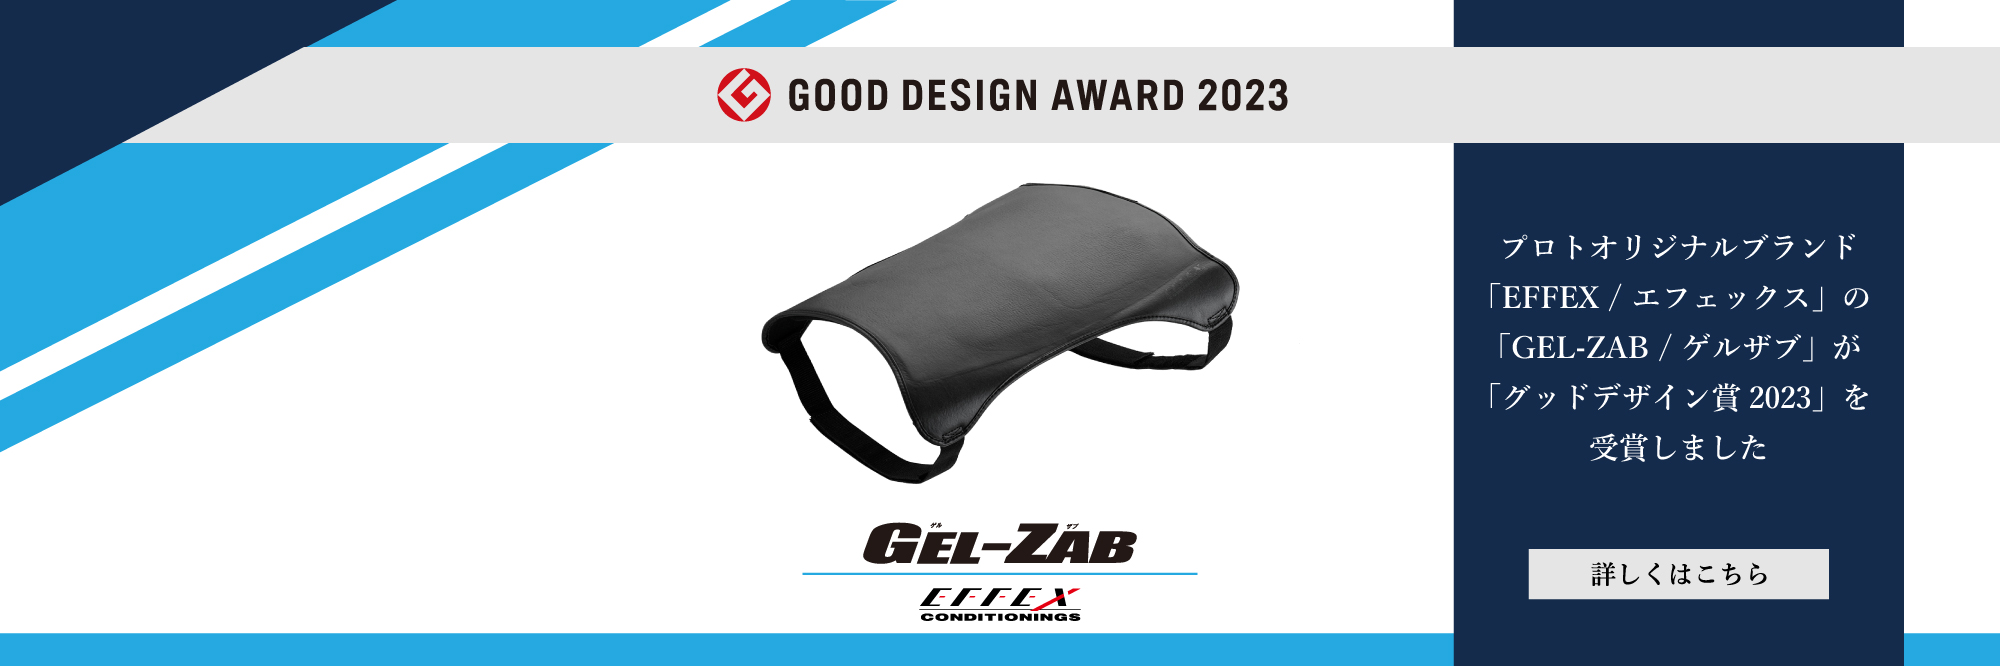 EFFEX GEL-ZAB/ゲルザブ シリーズ GOOD DESIGN AWARD 2023年度受賞